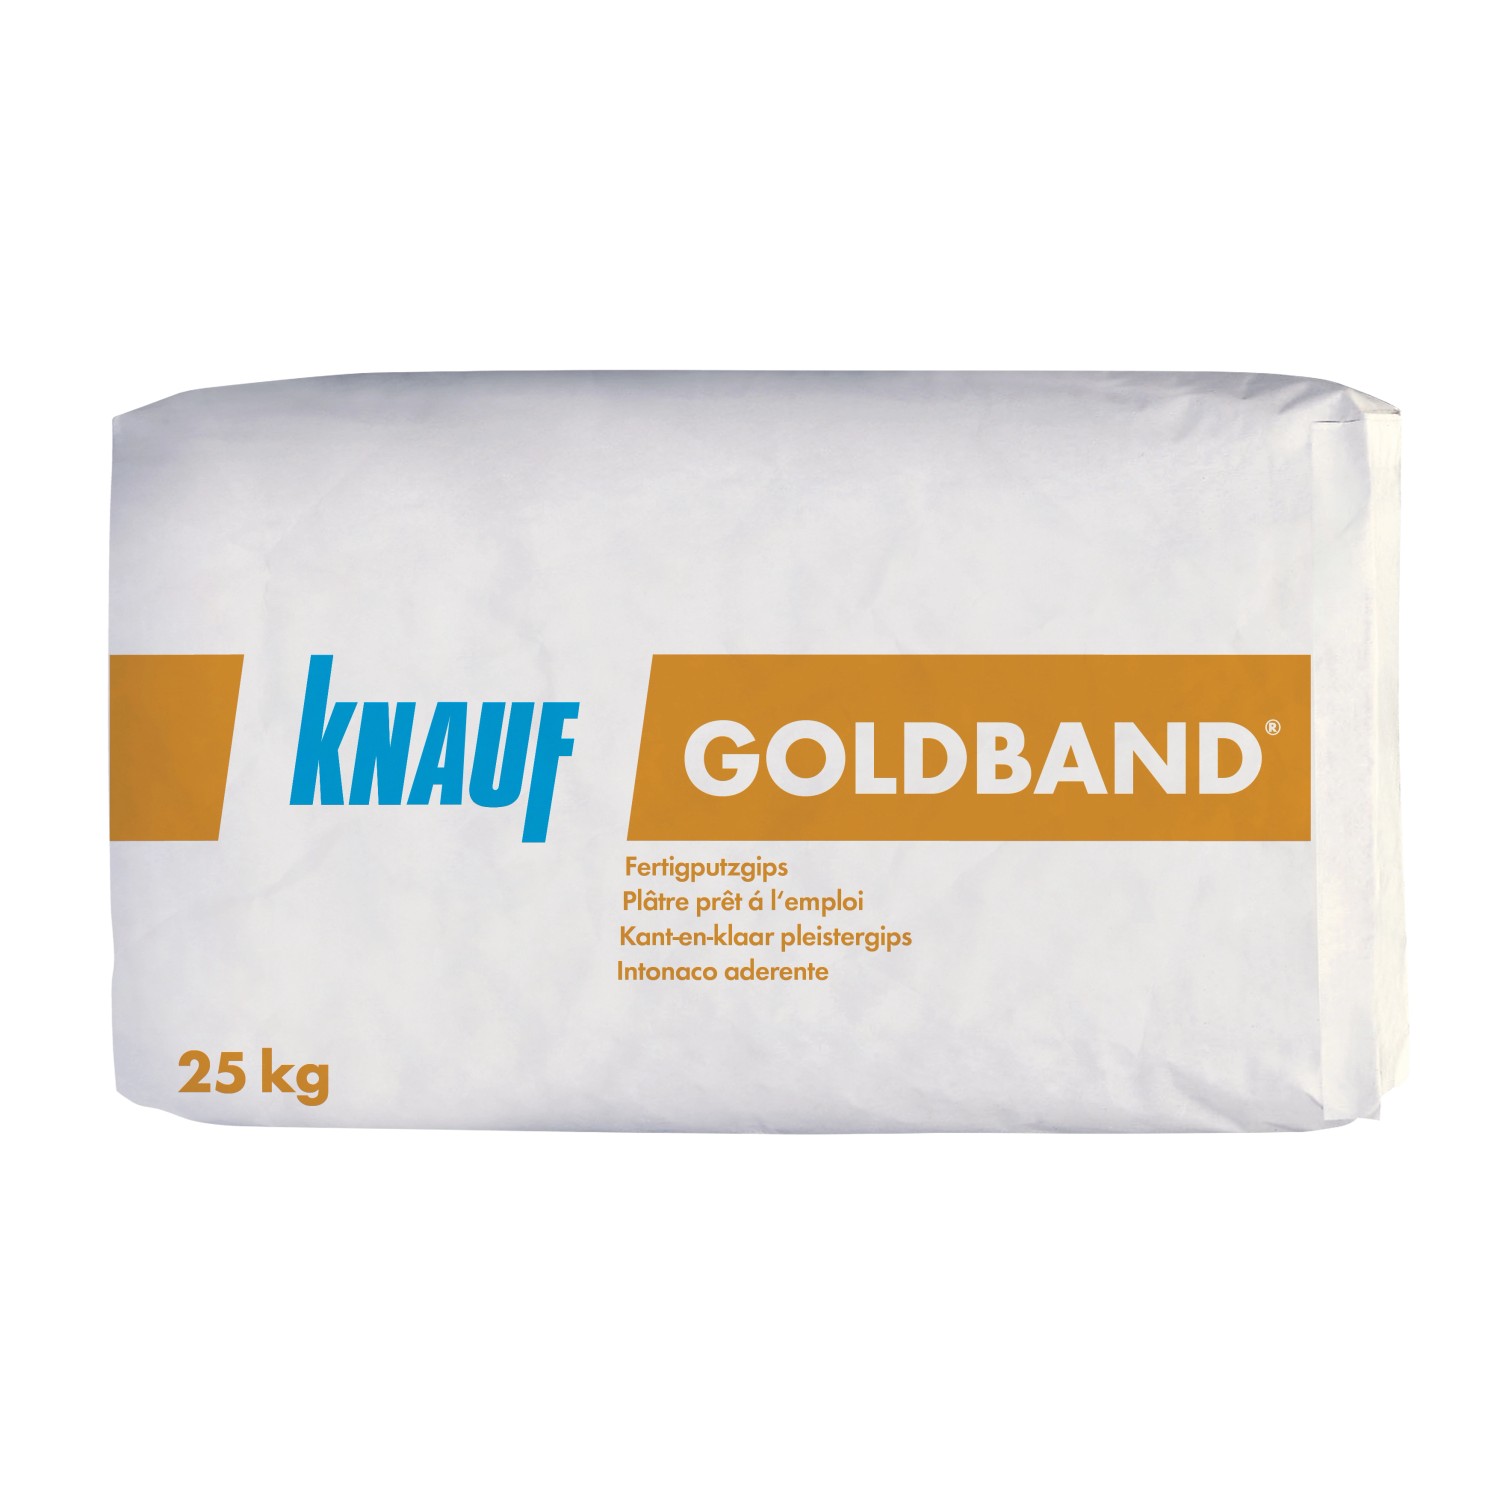 Knauf Fertigputz Goldband 25 kg